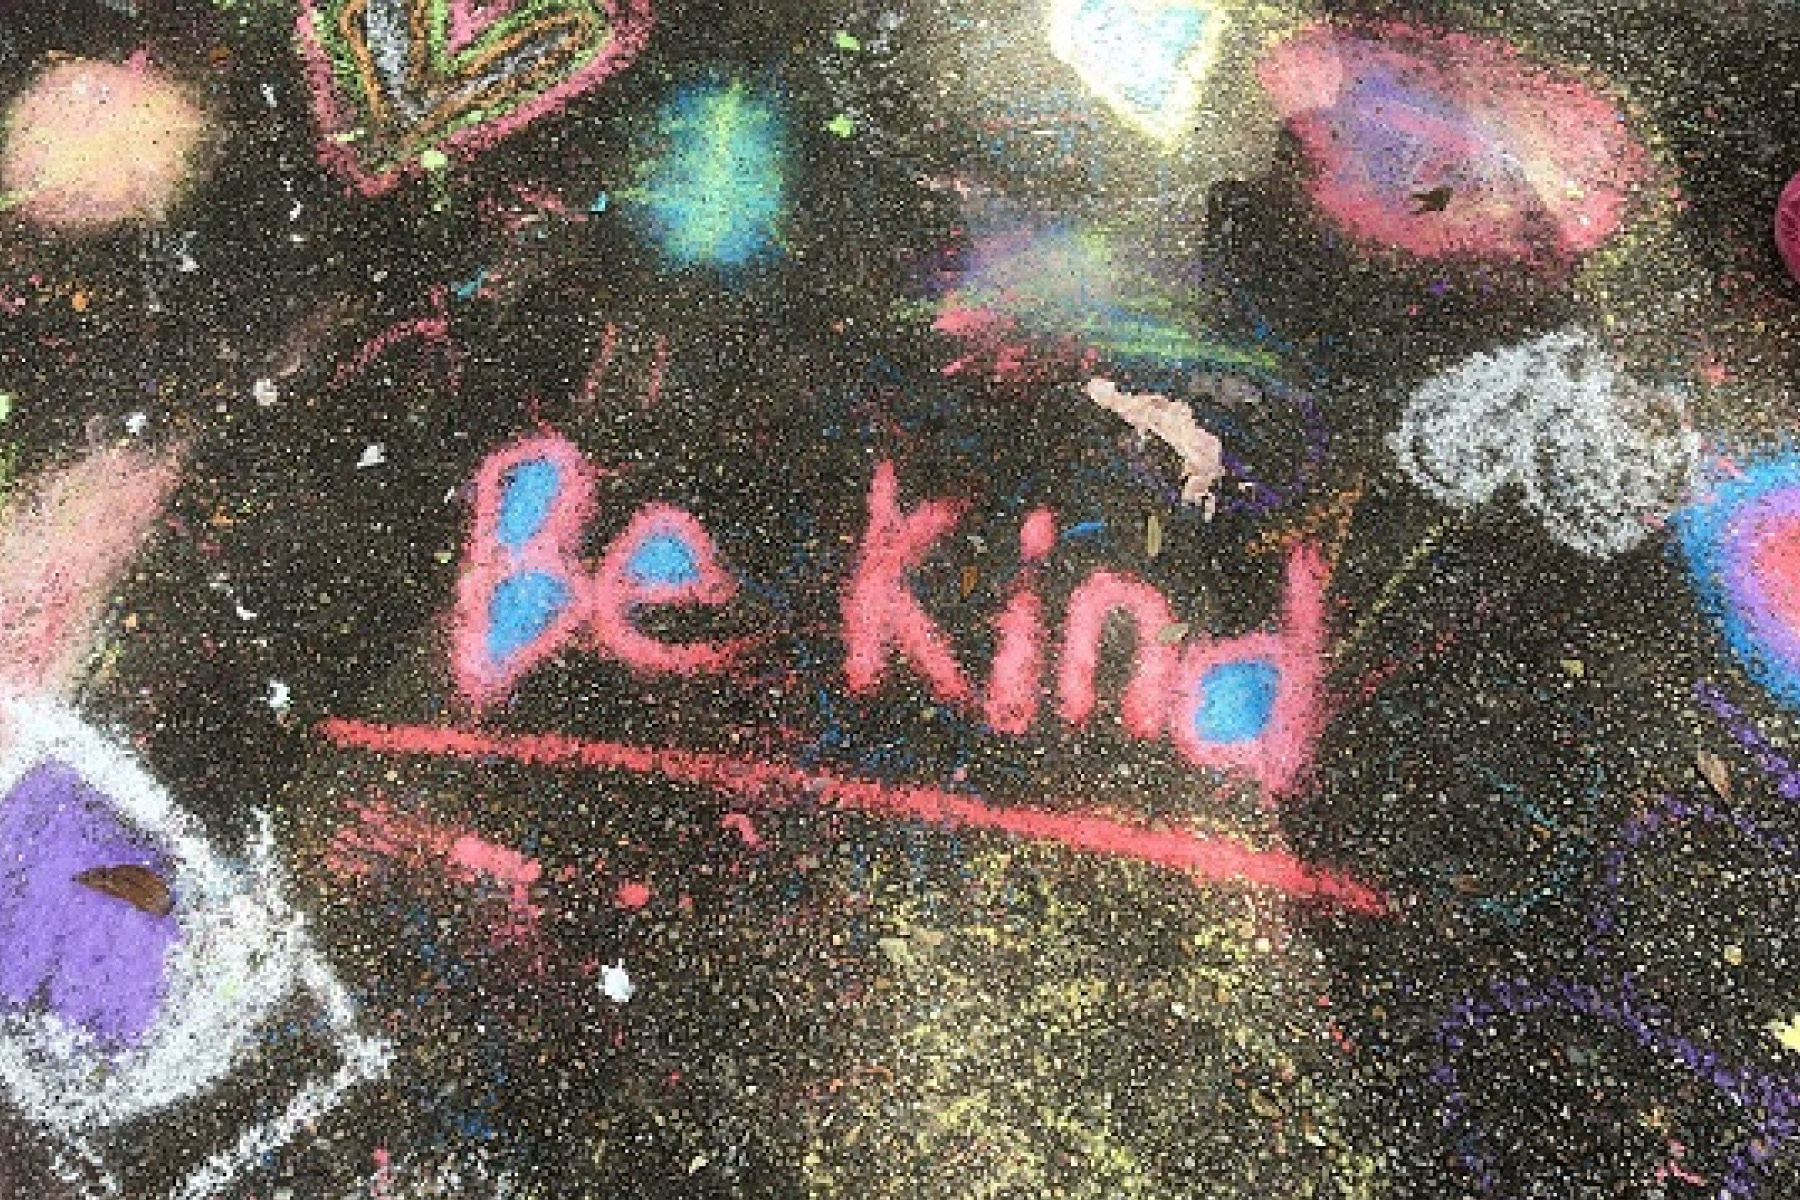 kindness-is-key